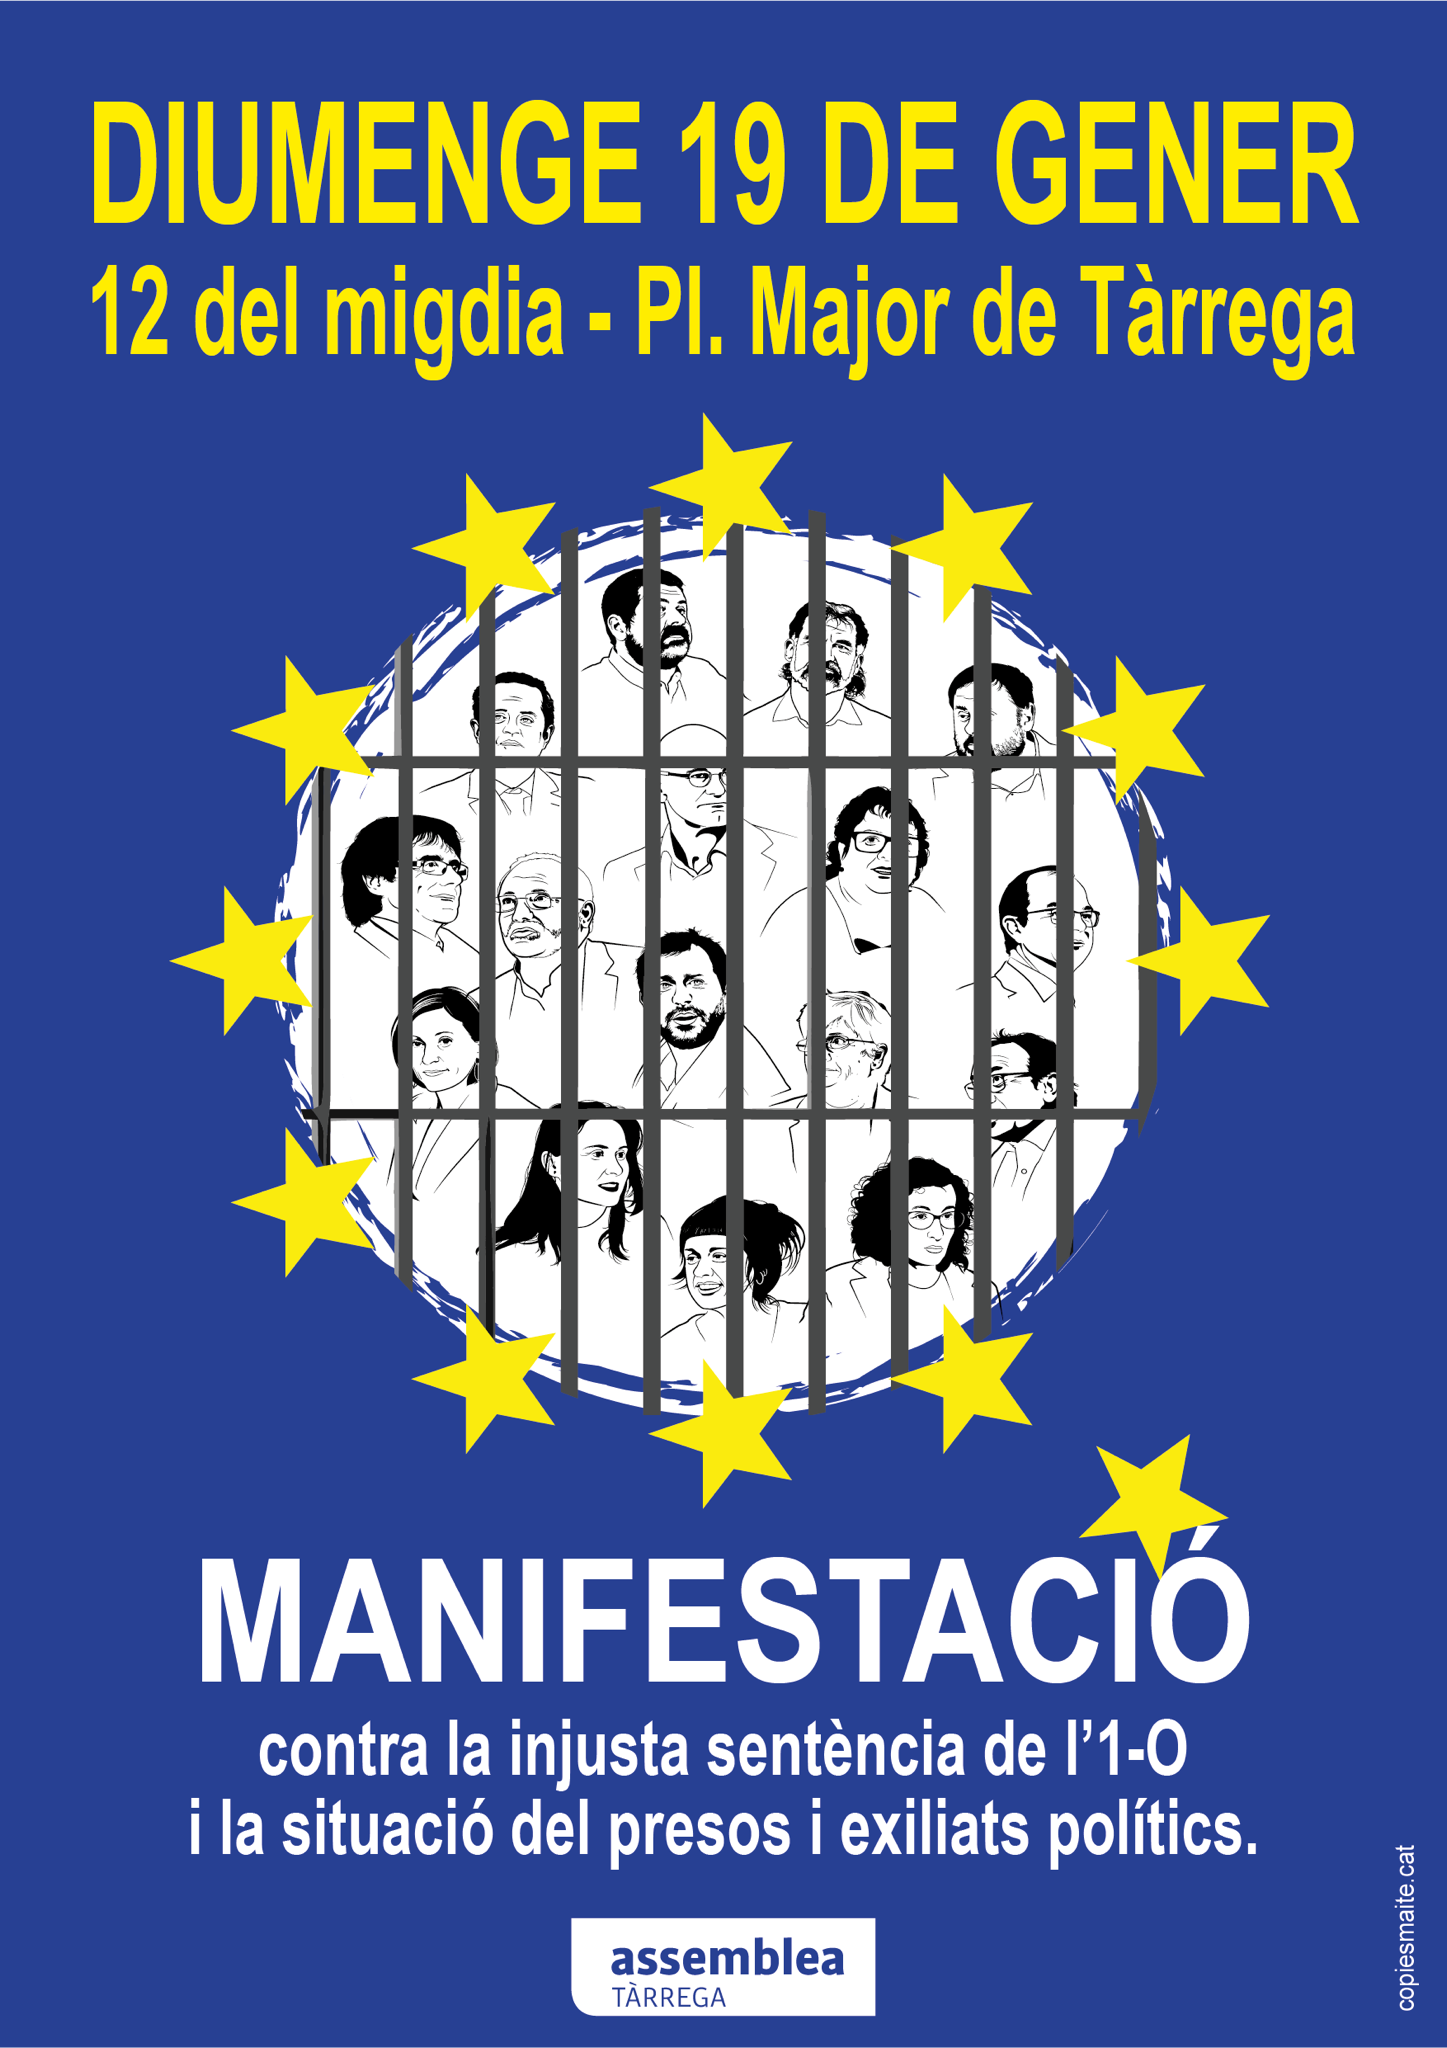 Manifestació contra la sentència, presos i exiliats polítics, i la repressió